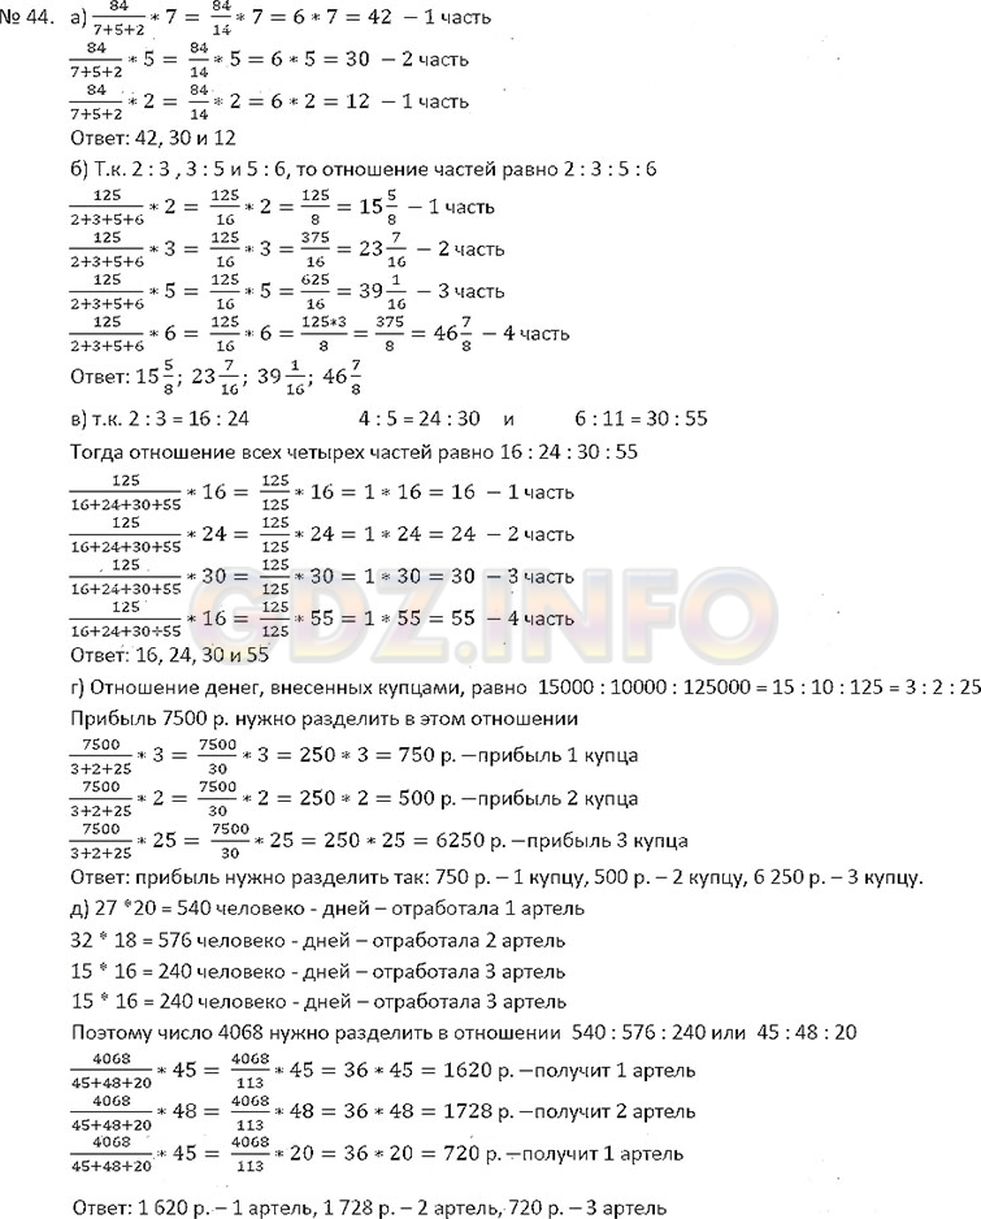 Фото ответа 3 на Задание 44 из ГДЗ по Математике за 6 класс: С.М. Никольский, М.К, Потапов, Н.Н. Решетников, А.В. Шевкин. 2015г.